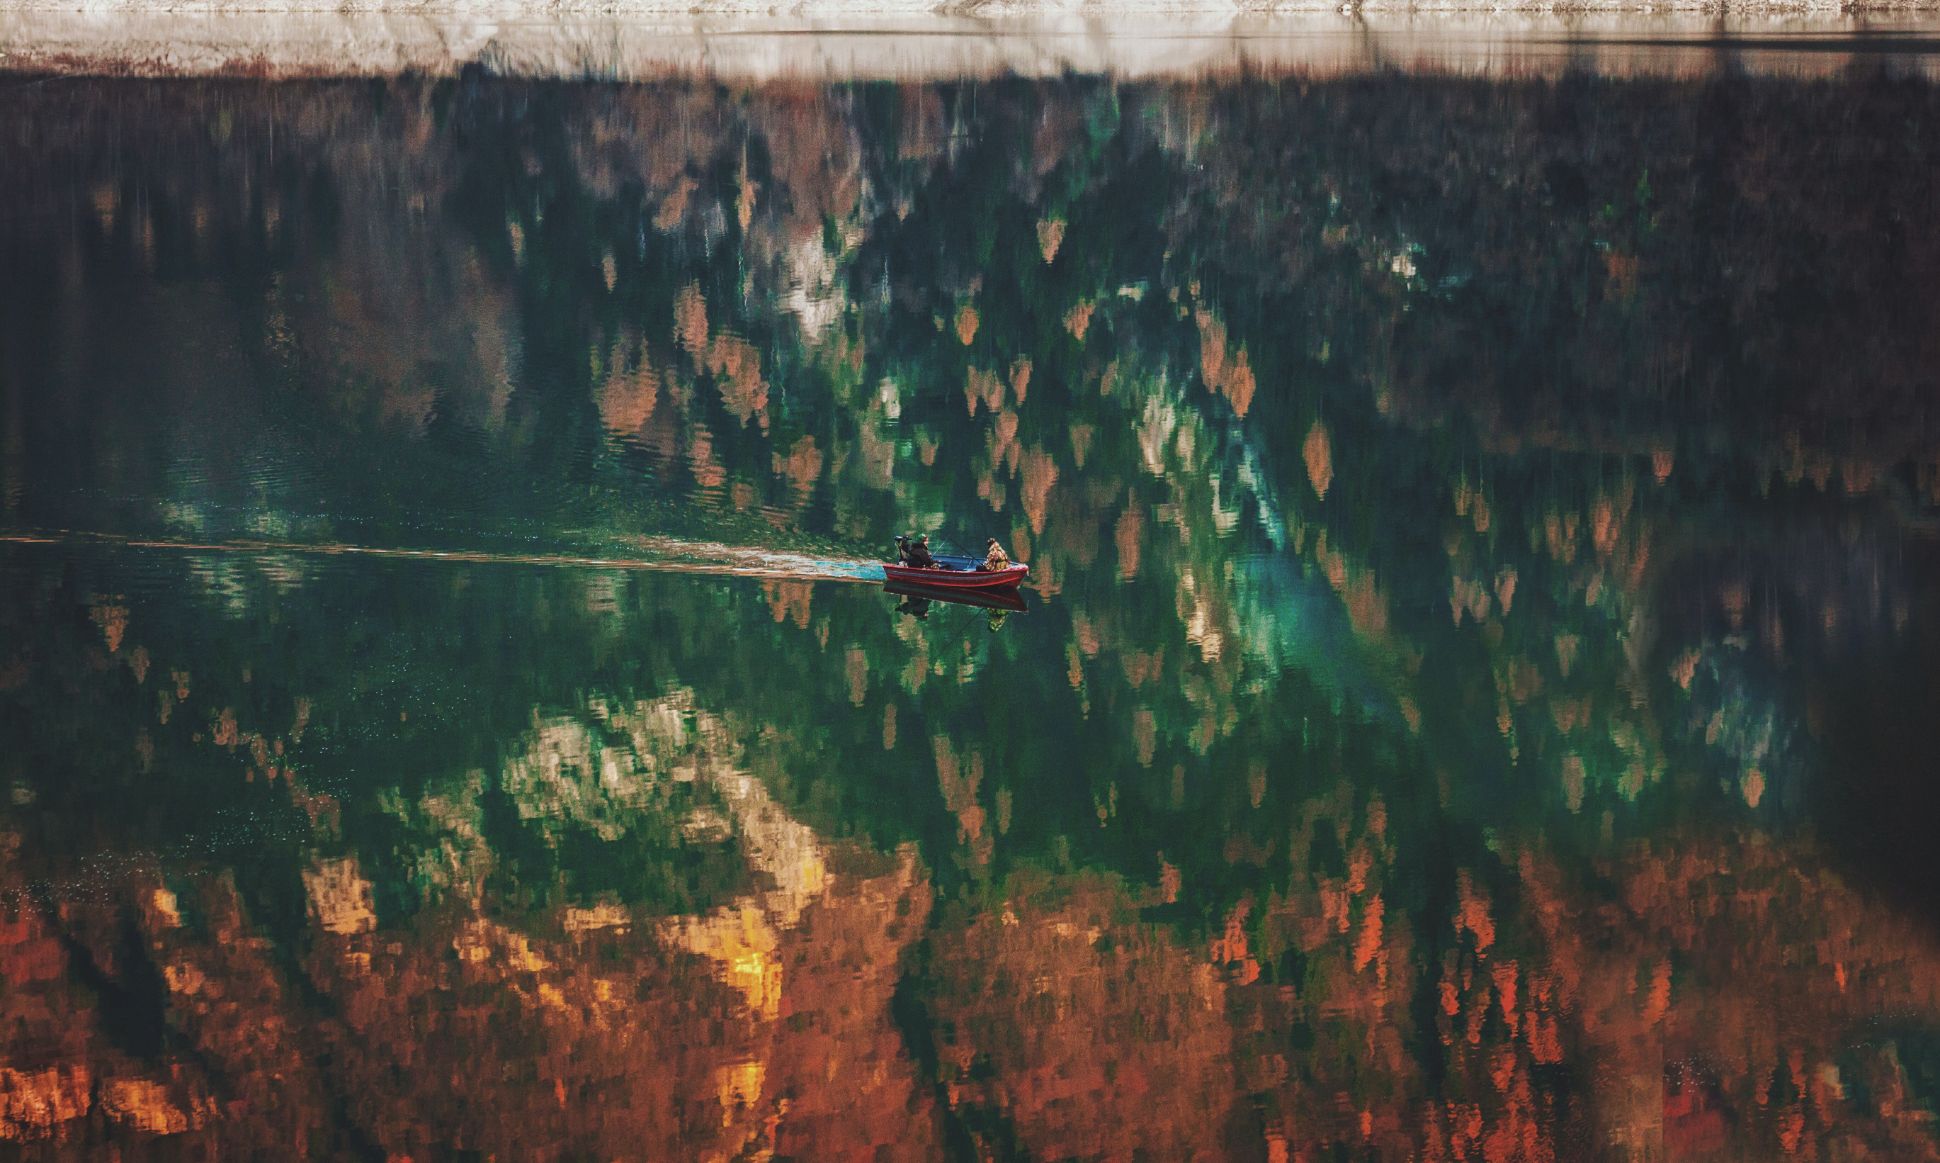 Dos personas en una pequeña barca moviéndose por el agua con el reflejo de los árboles otoñales.